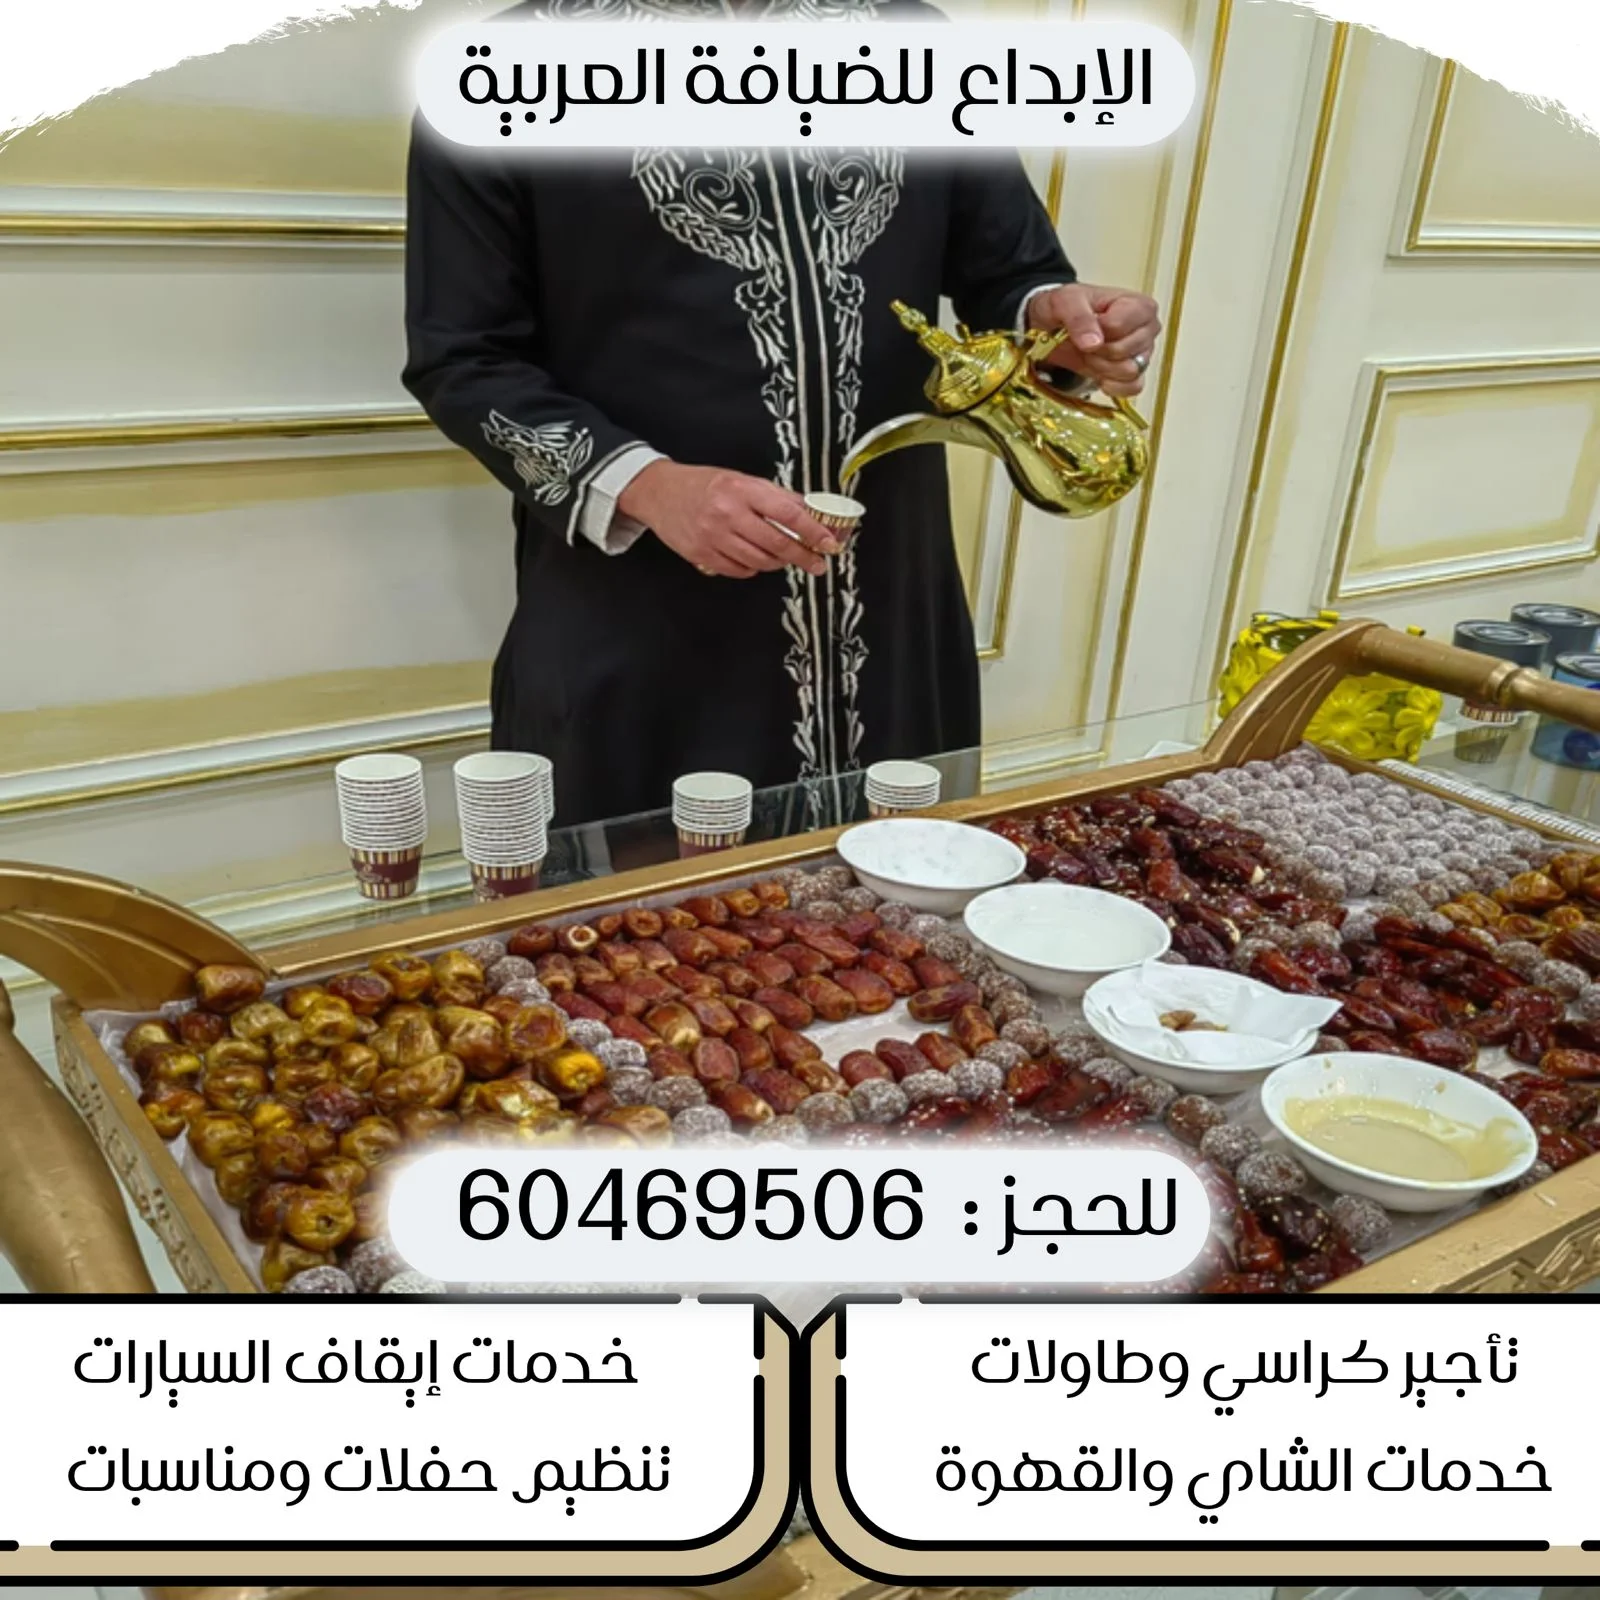 خدمة شاي وقهوة ومشروبات ساخنه بالكويت |60469506| الابداع للضيافة